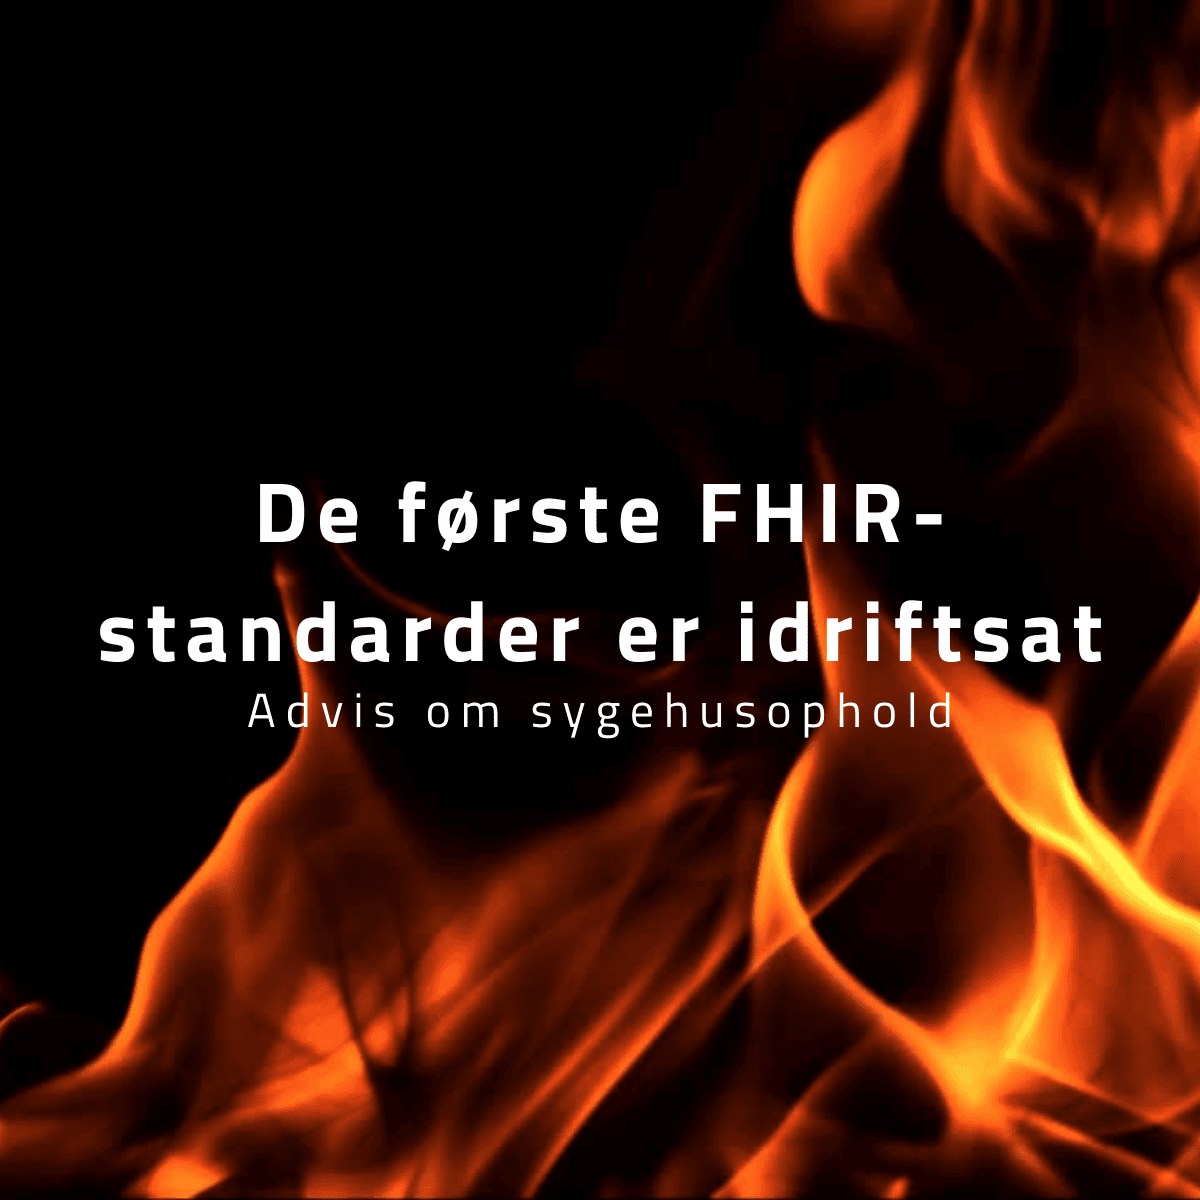 Ild med baggrund og tekst "De første FHIR-standarder er idriftsat" og "Advis om sygehusophold"